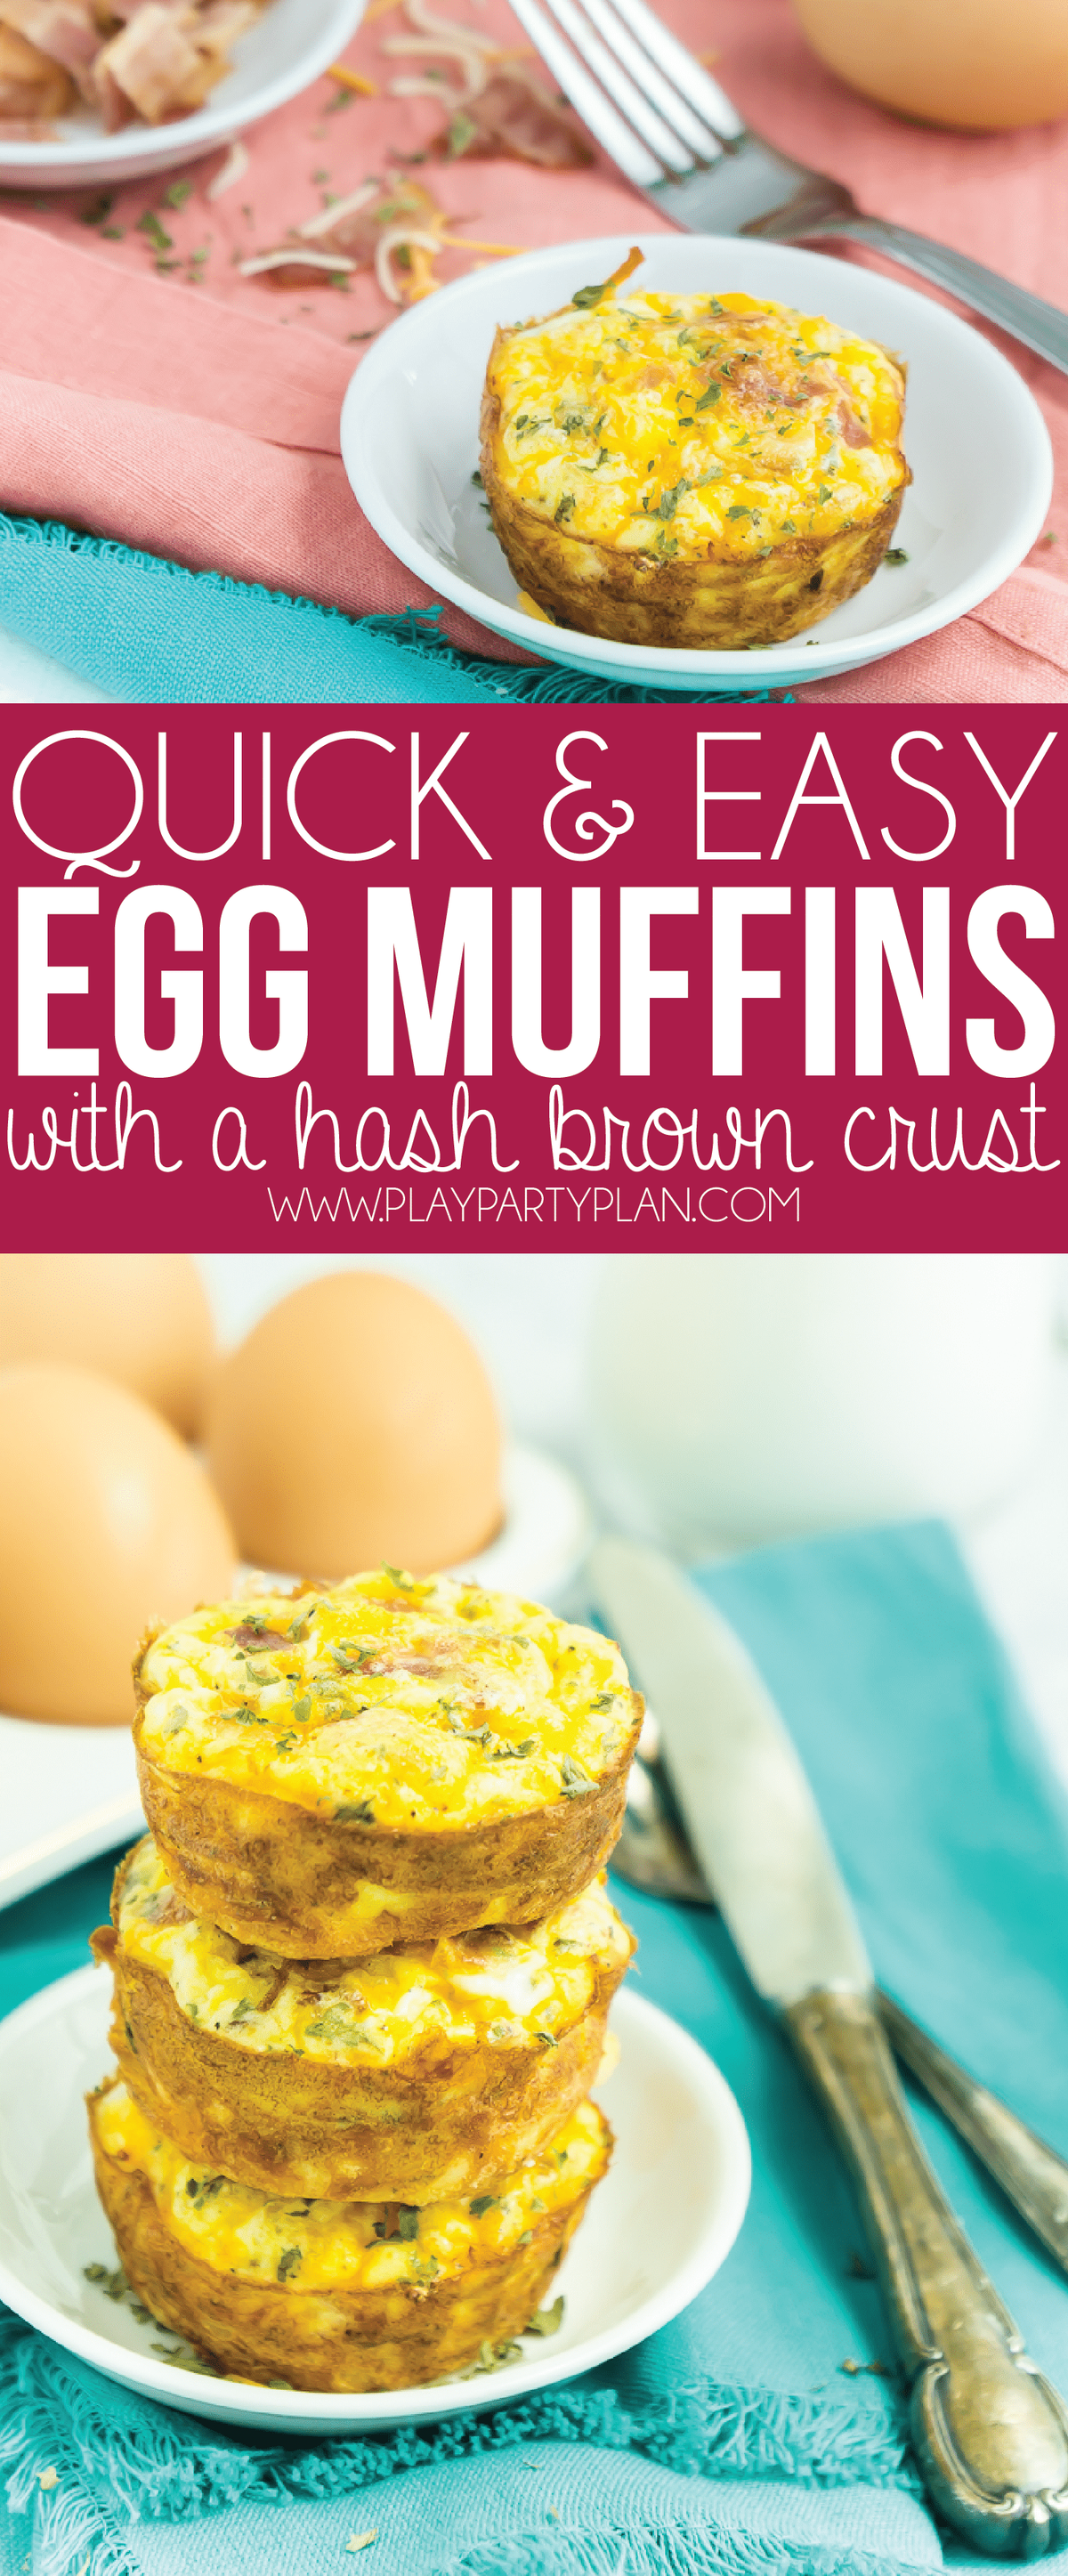 सबसे अच्छा अंडा और हैशब्रोन्स नाश्ते के मफिन! बच्चों या वयस्कों के लिए बिल्कुल सही और बनाने में आसान